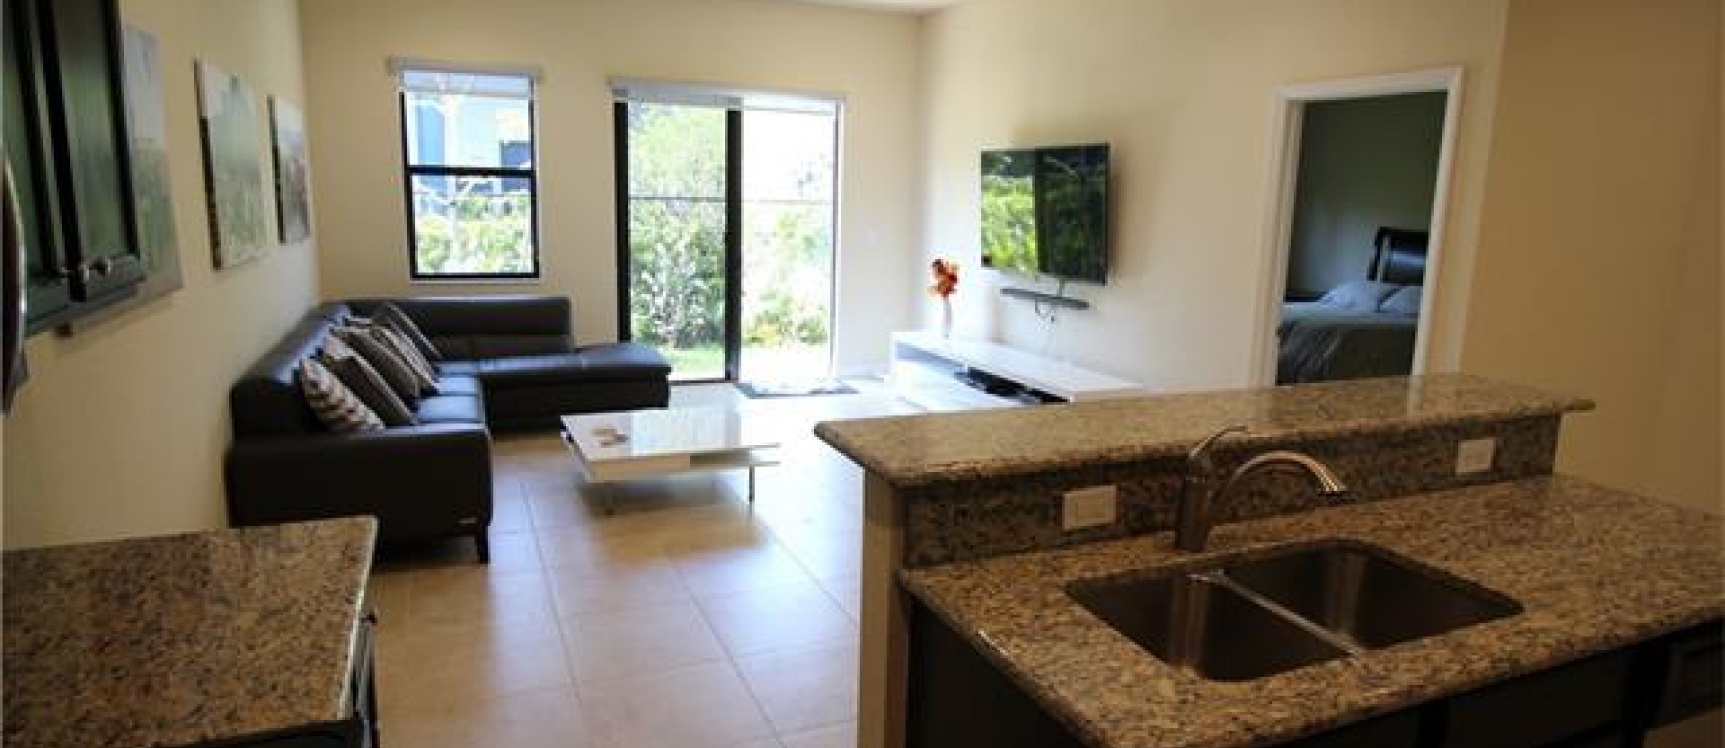 GeoBienes - Casa a la Venta en MIAMI, Ciudadela Bellagio - Plusvalia Guayaquil Casas de venta y alquiler Inmobiliaria Ecuador